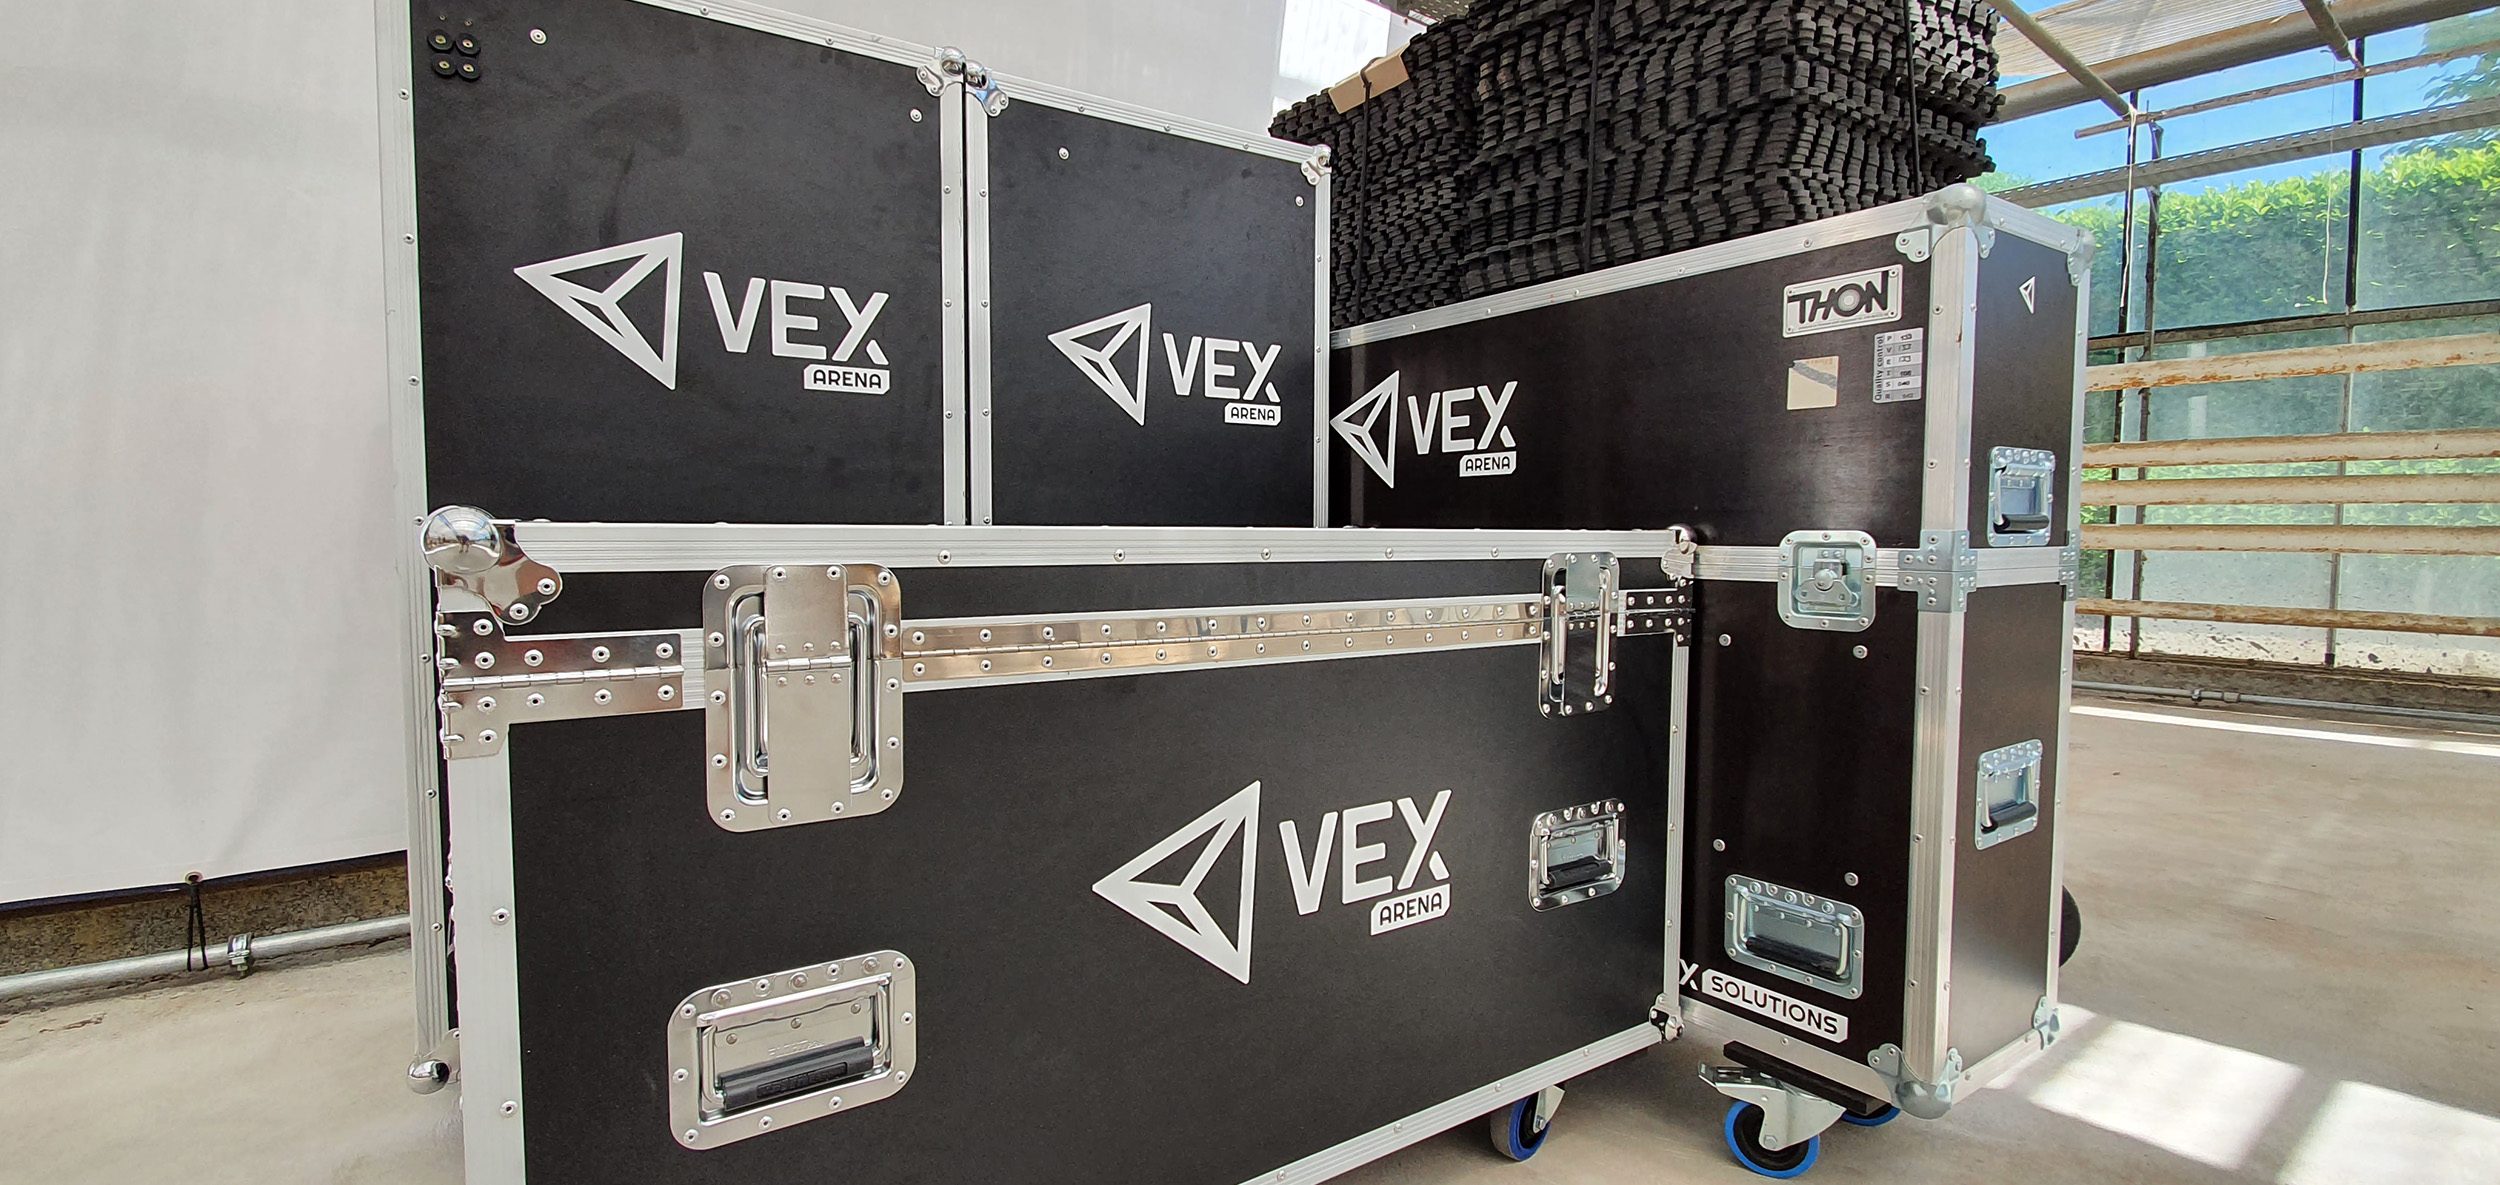 VEX Arena mobiel, de enige virtual reality-arena waarin je je kunt verplaatsen